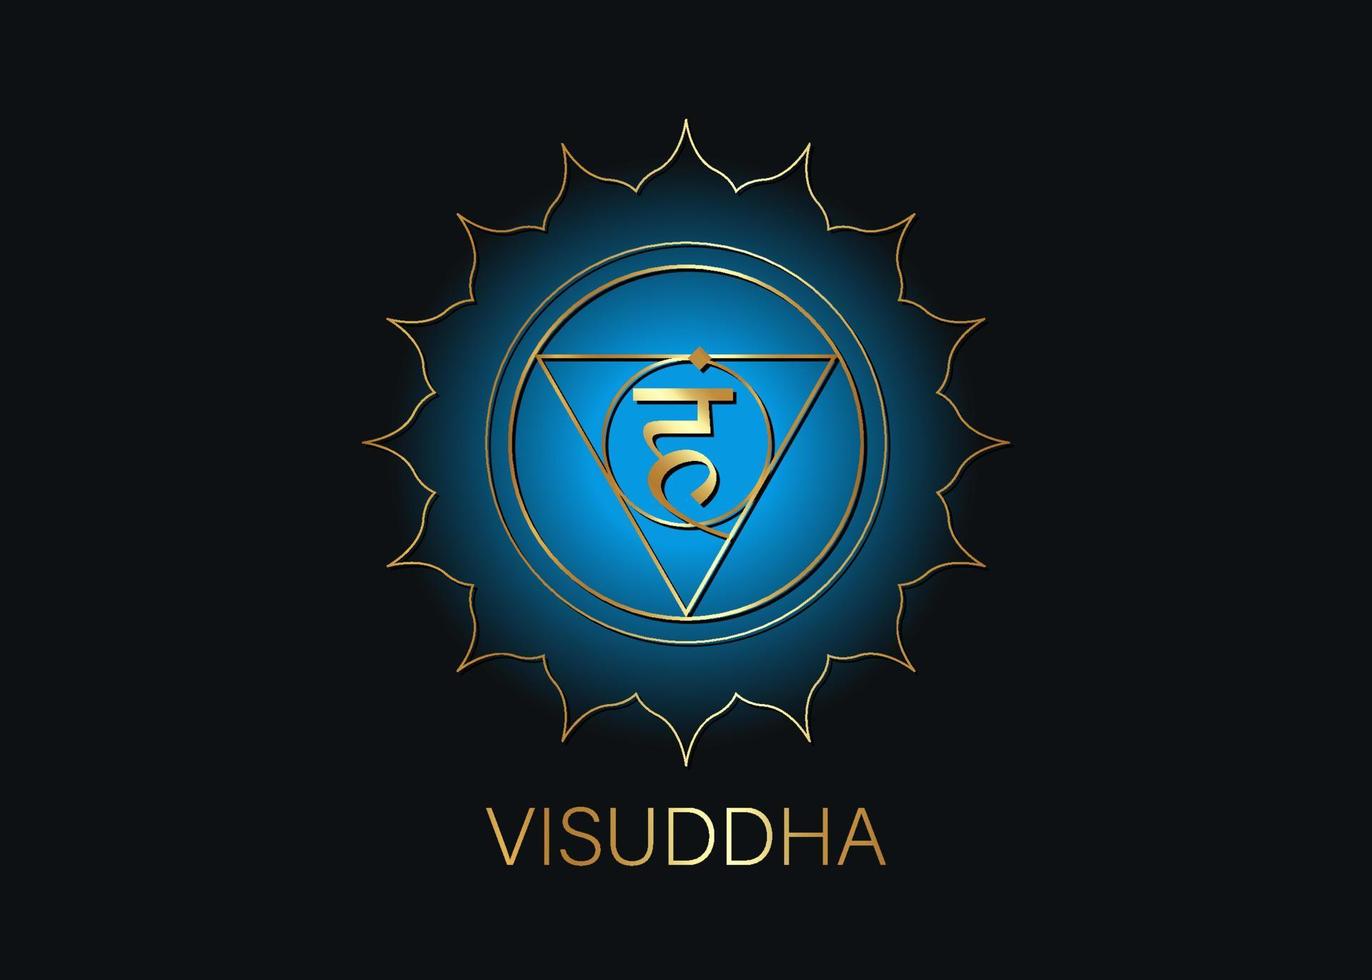 visuddha do quinto chacra da garganta com a semente do mantra sânscrito hindu vam. símbolo de estilo design plano azul e dourado para meditação, ioga. vetor de modelo de logotipo redondo isolado em fundo preto